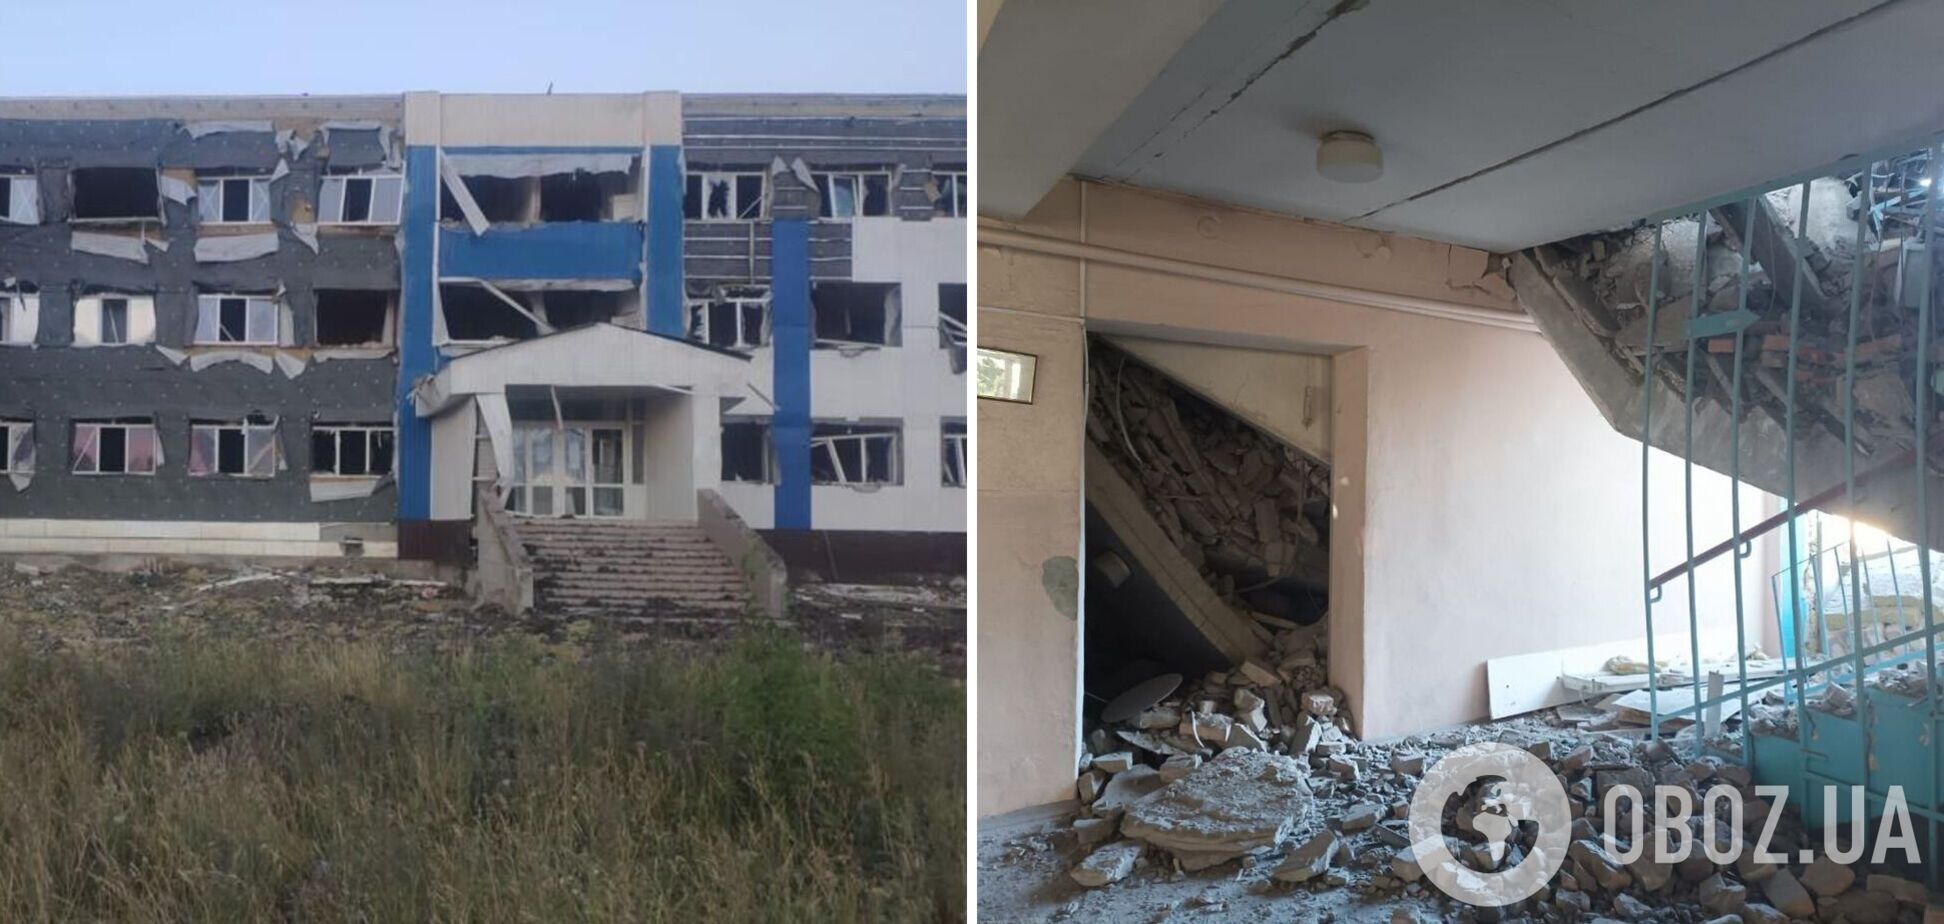 Поднялся столб дыма: ракетный удар РФ по школе в Константиновке попал на видео